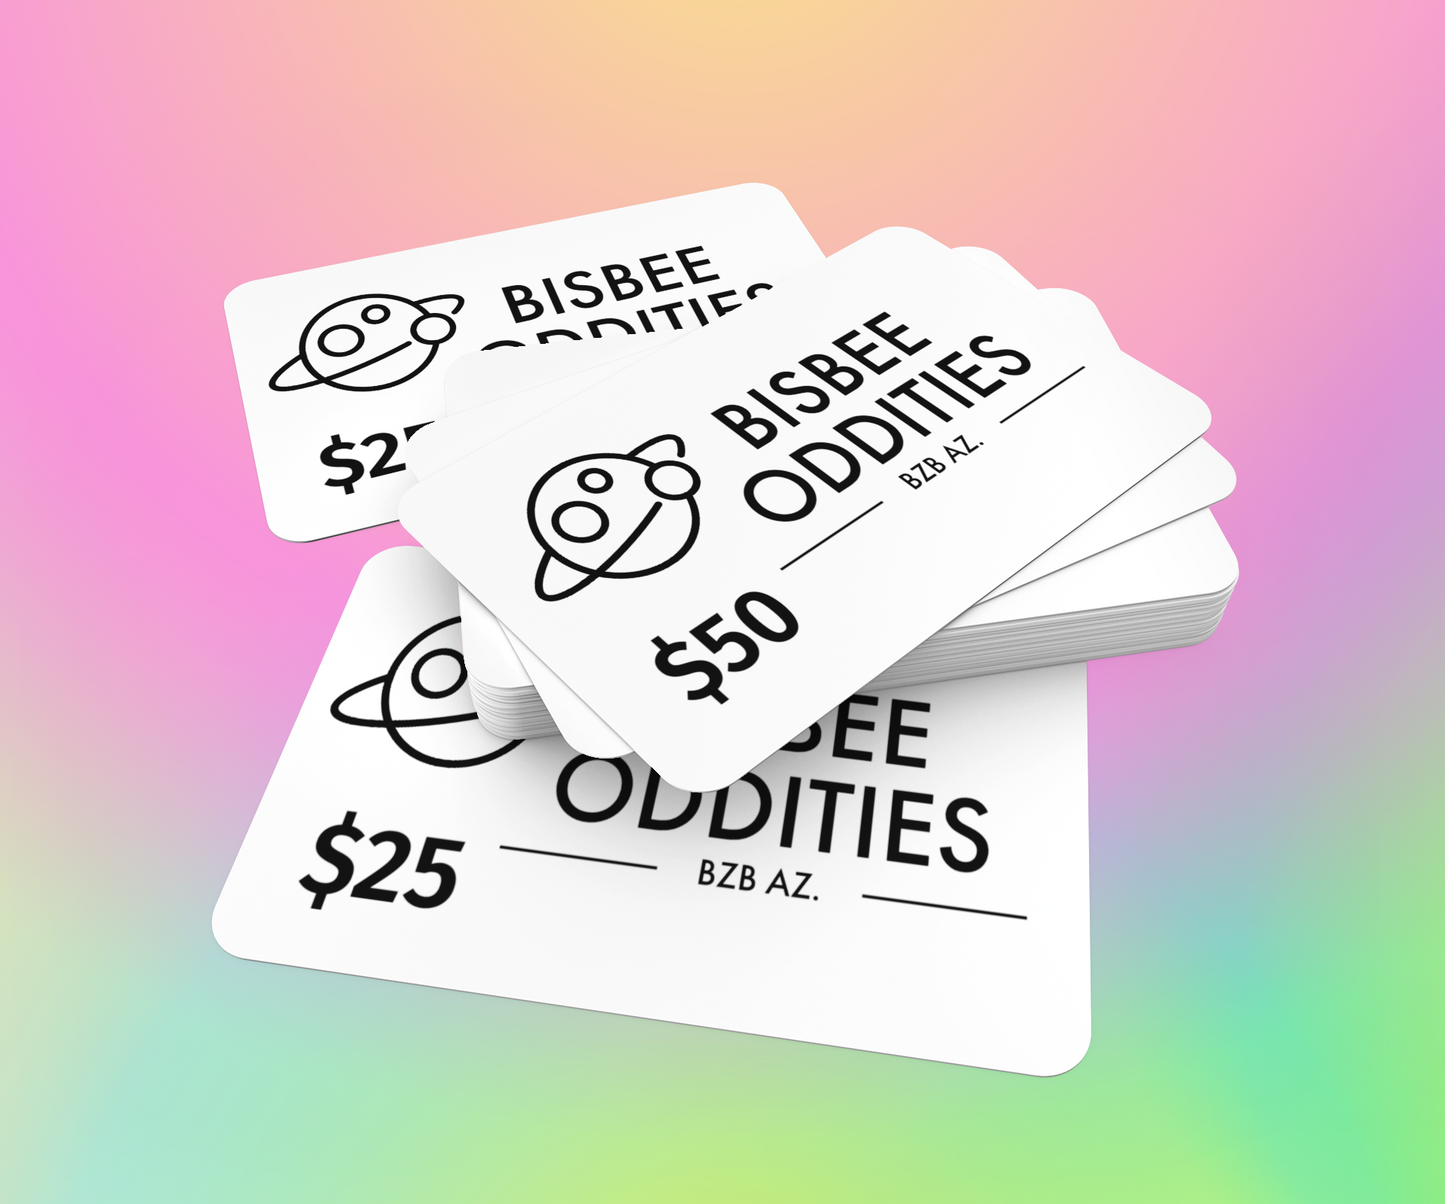 Bisbee Oddities Online - Gift Cards